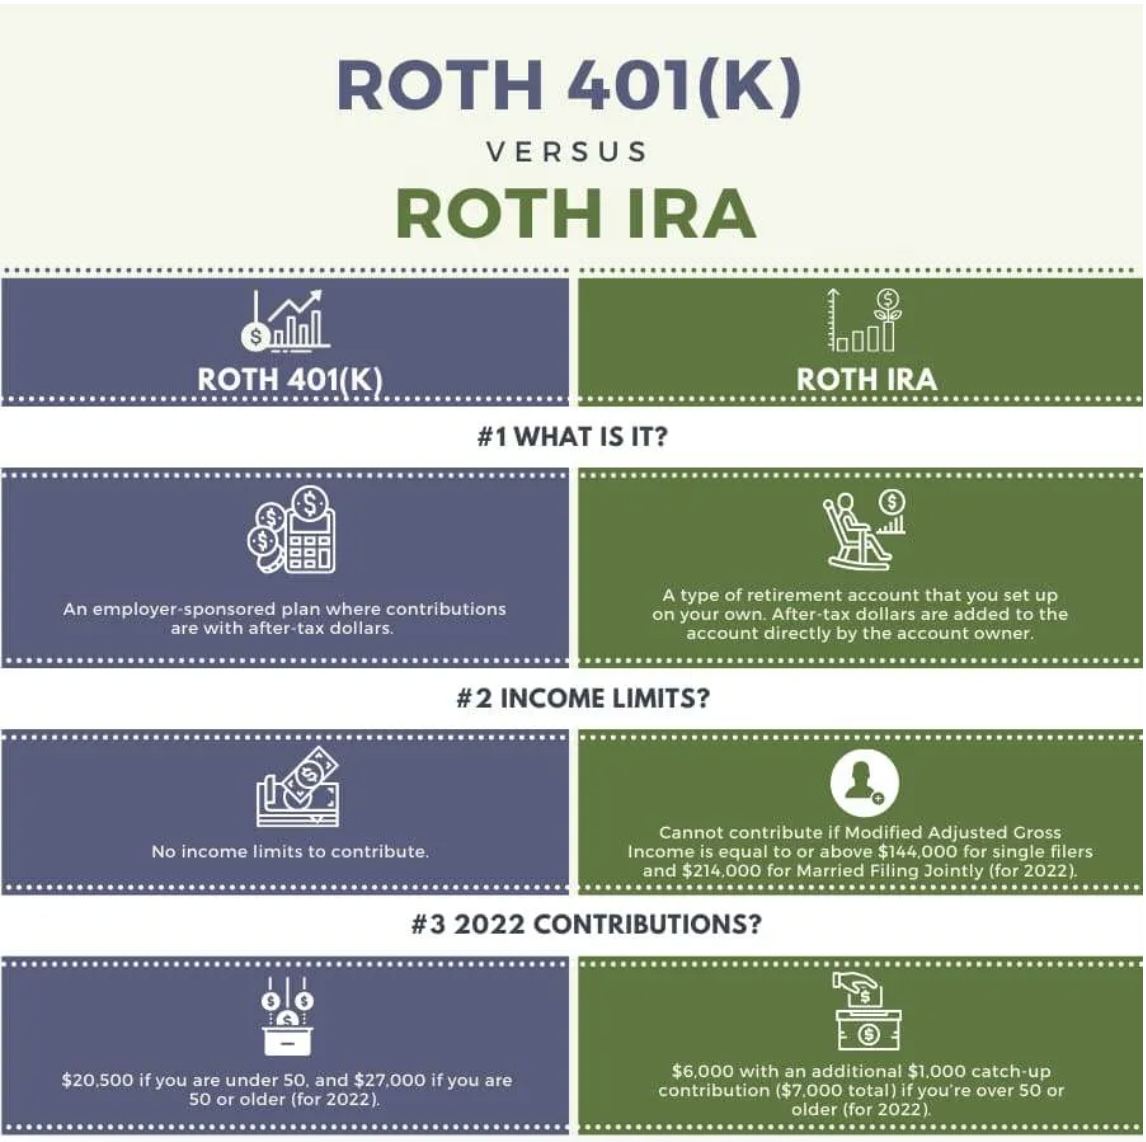 roth 401(k0 versus roth ira